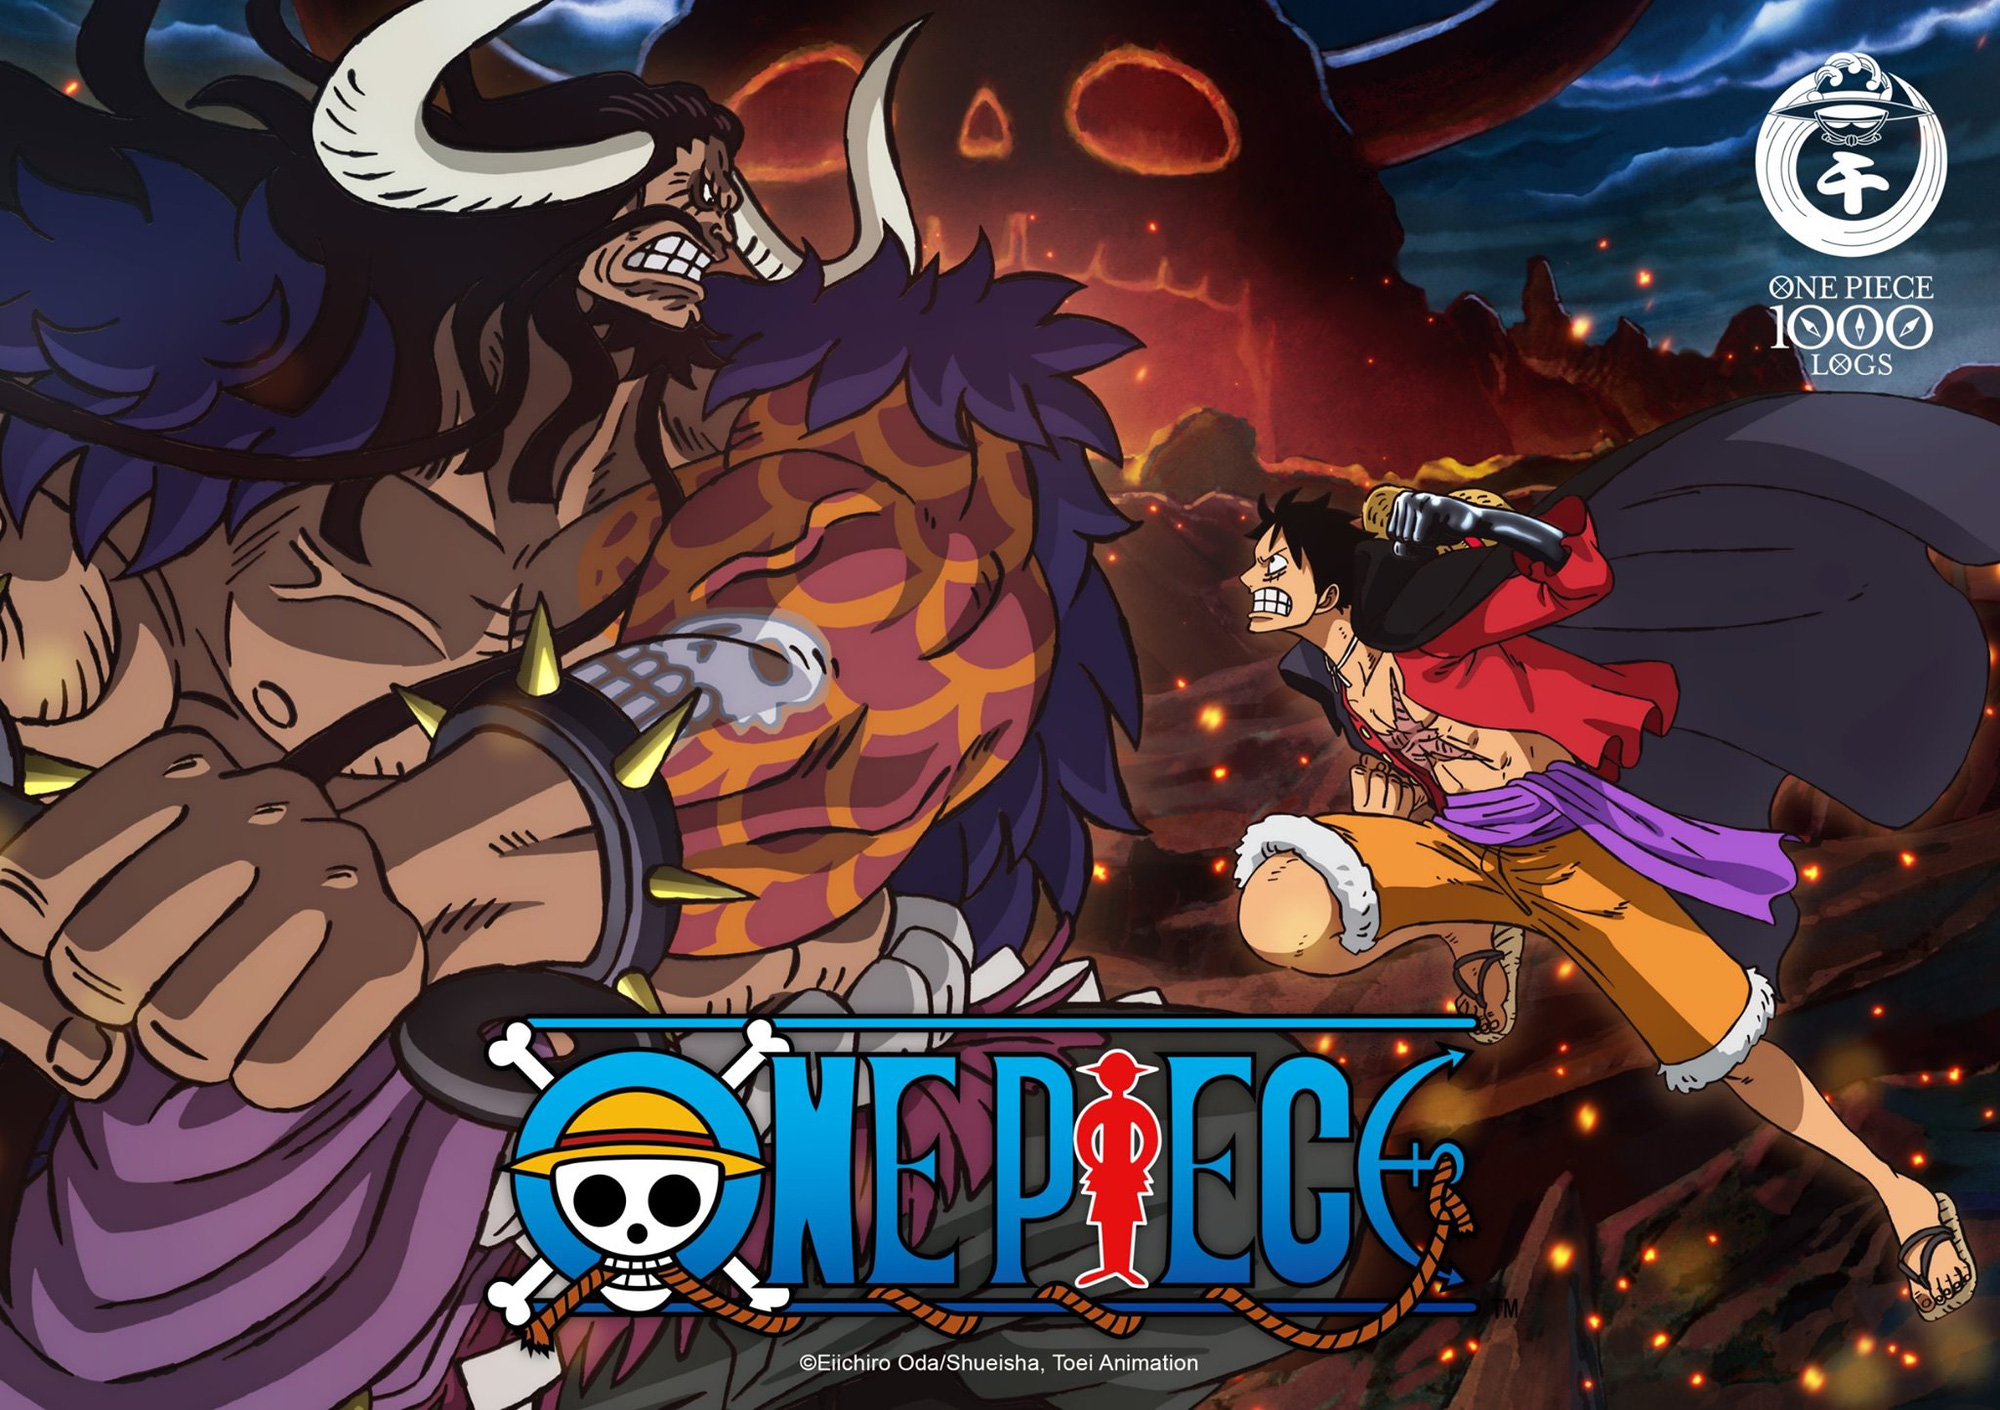 Với tập 1000 của anime One Piece sắp ra mắt, bạn không thể bỏ lỡ trailer Sword hấp dẫn và đầy kịch tính. Đón xem Luffy và băng hải tặc Straw Hat trong cuộc phiêu lưu đầy cảm xúc và bất ngờ đi đến đâu. Hãy cùng đồng hành và cảm nhận với nhân vật yêu thích của bạn.